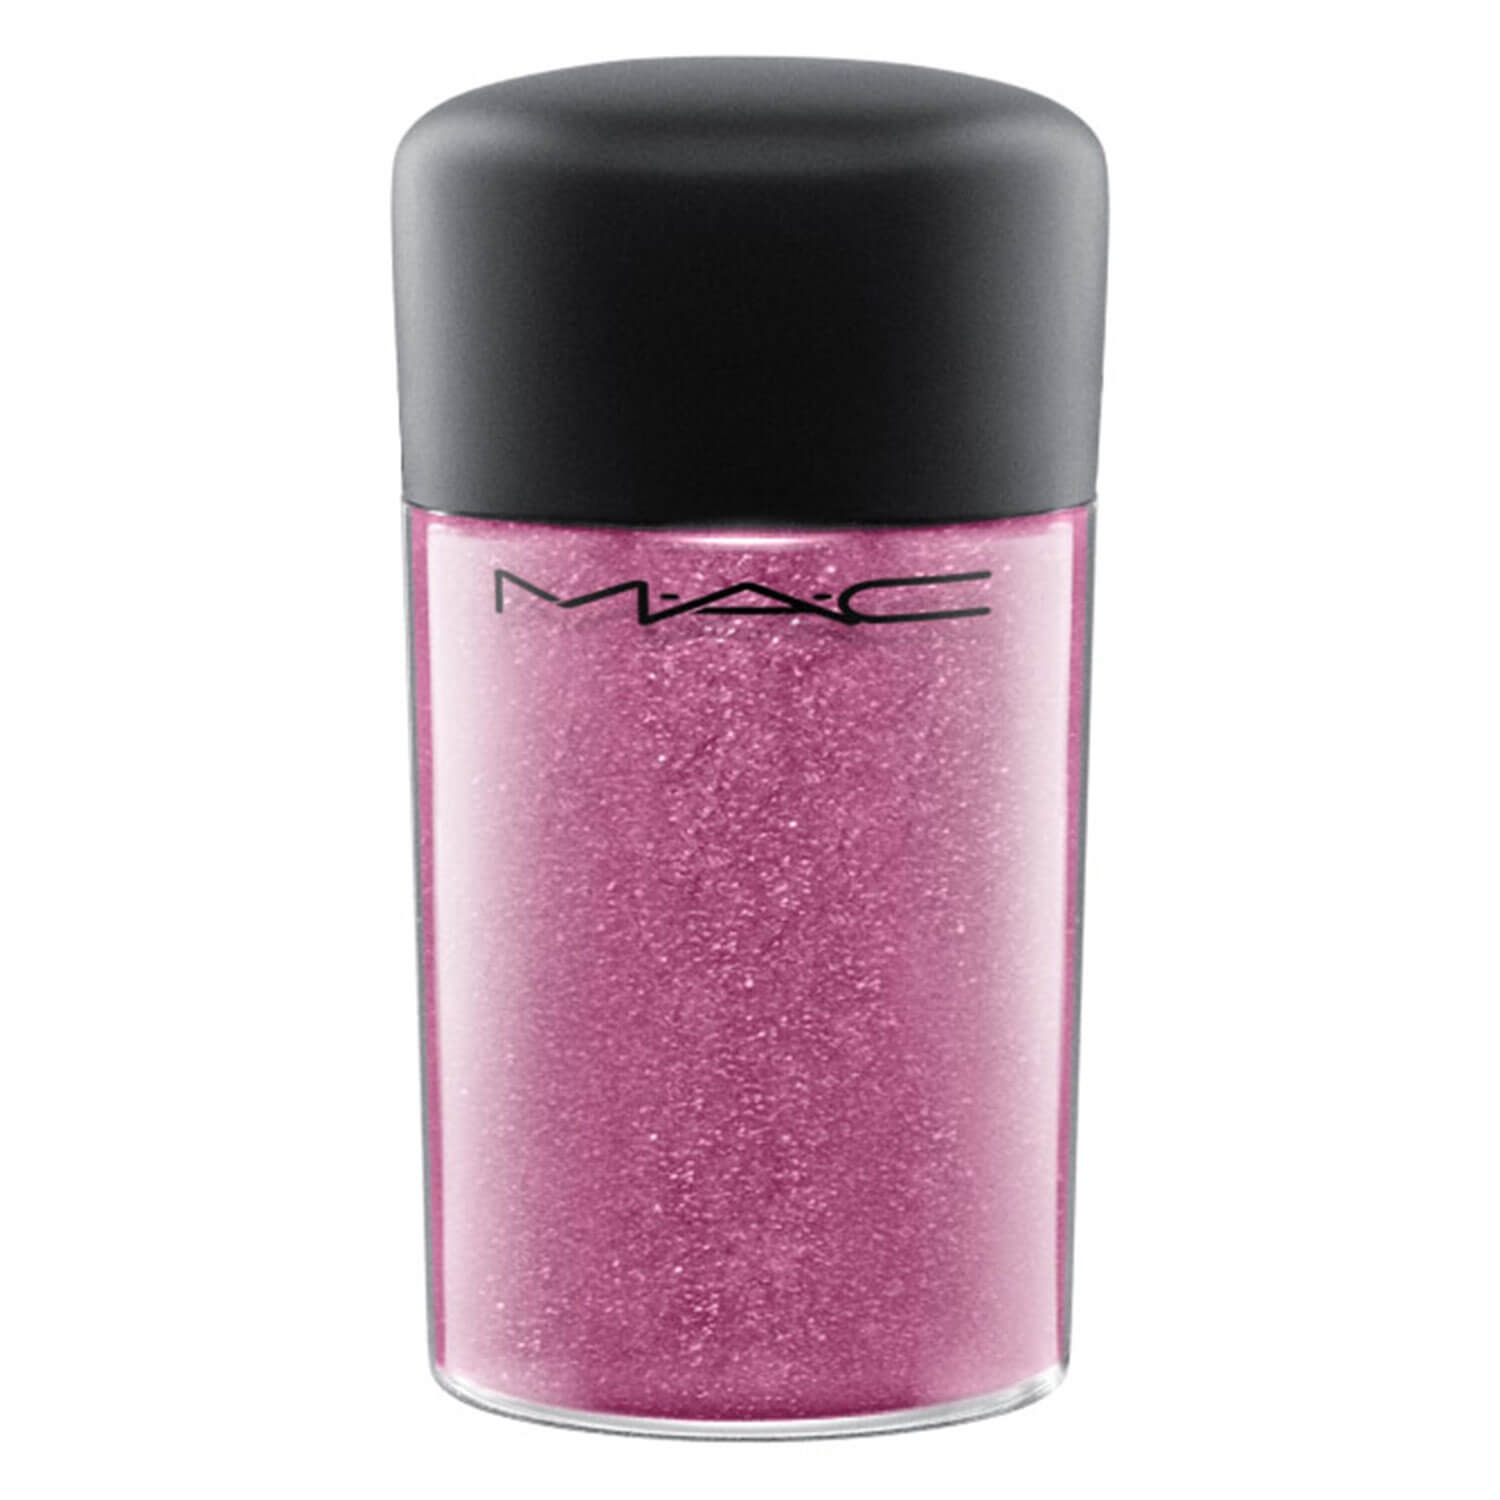 Produktbild von M·A·C In Monochrome - Pro Glitter Rose